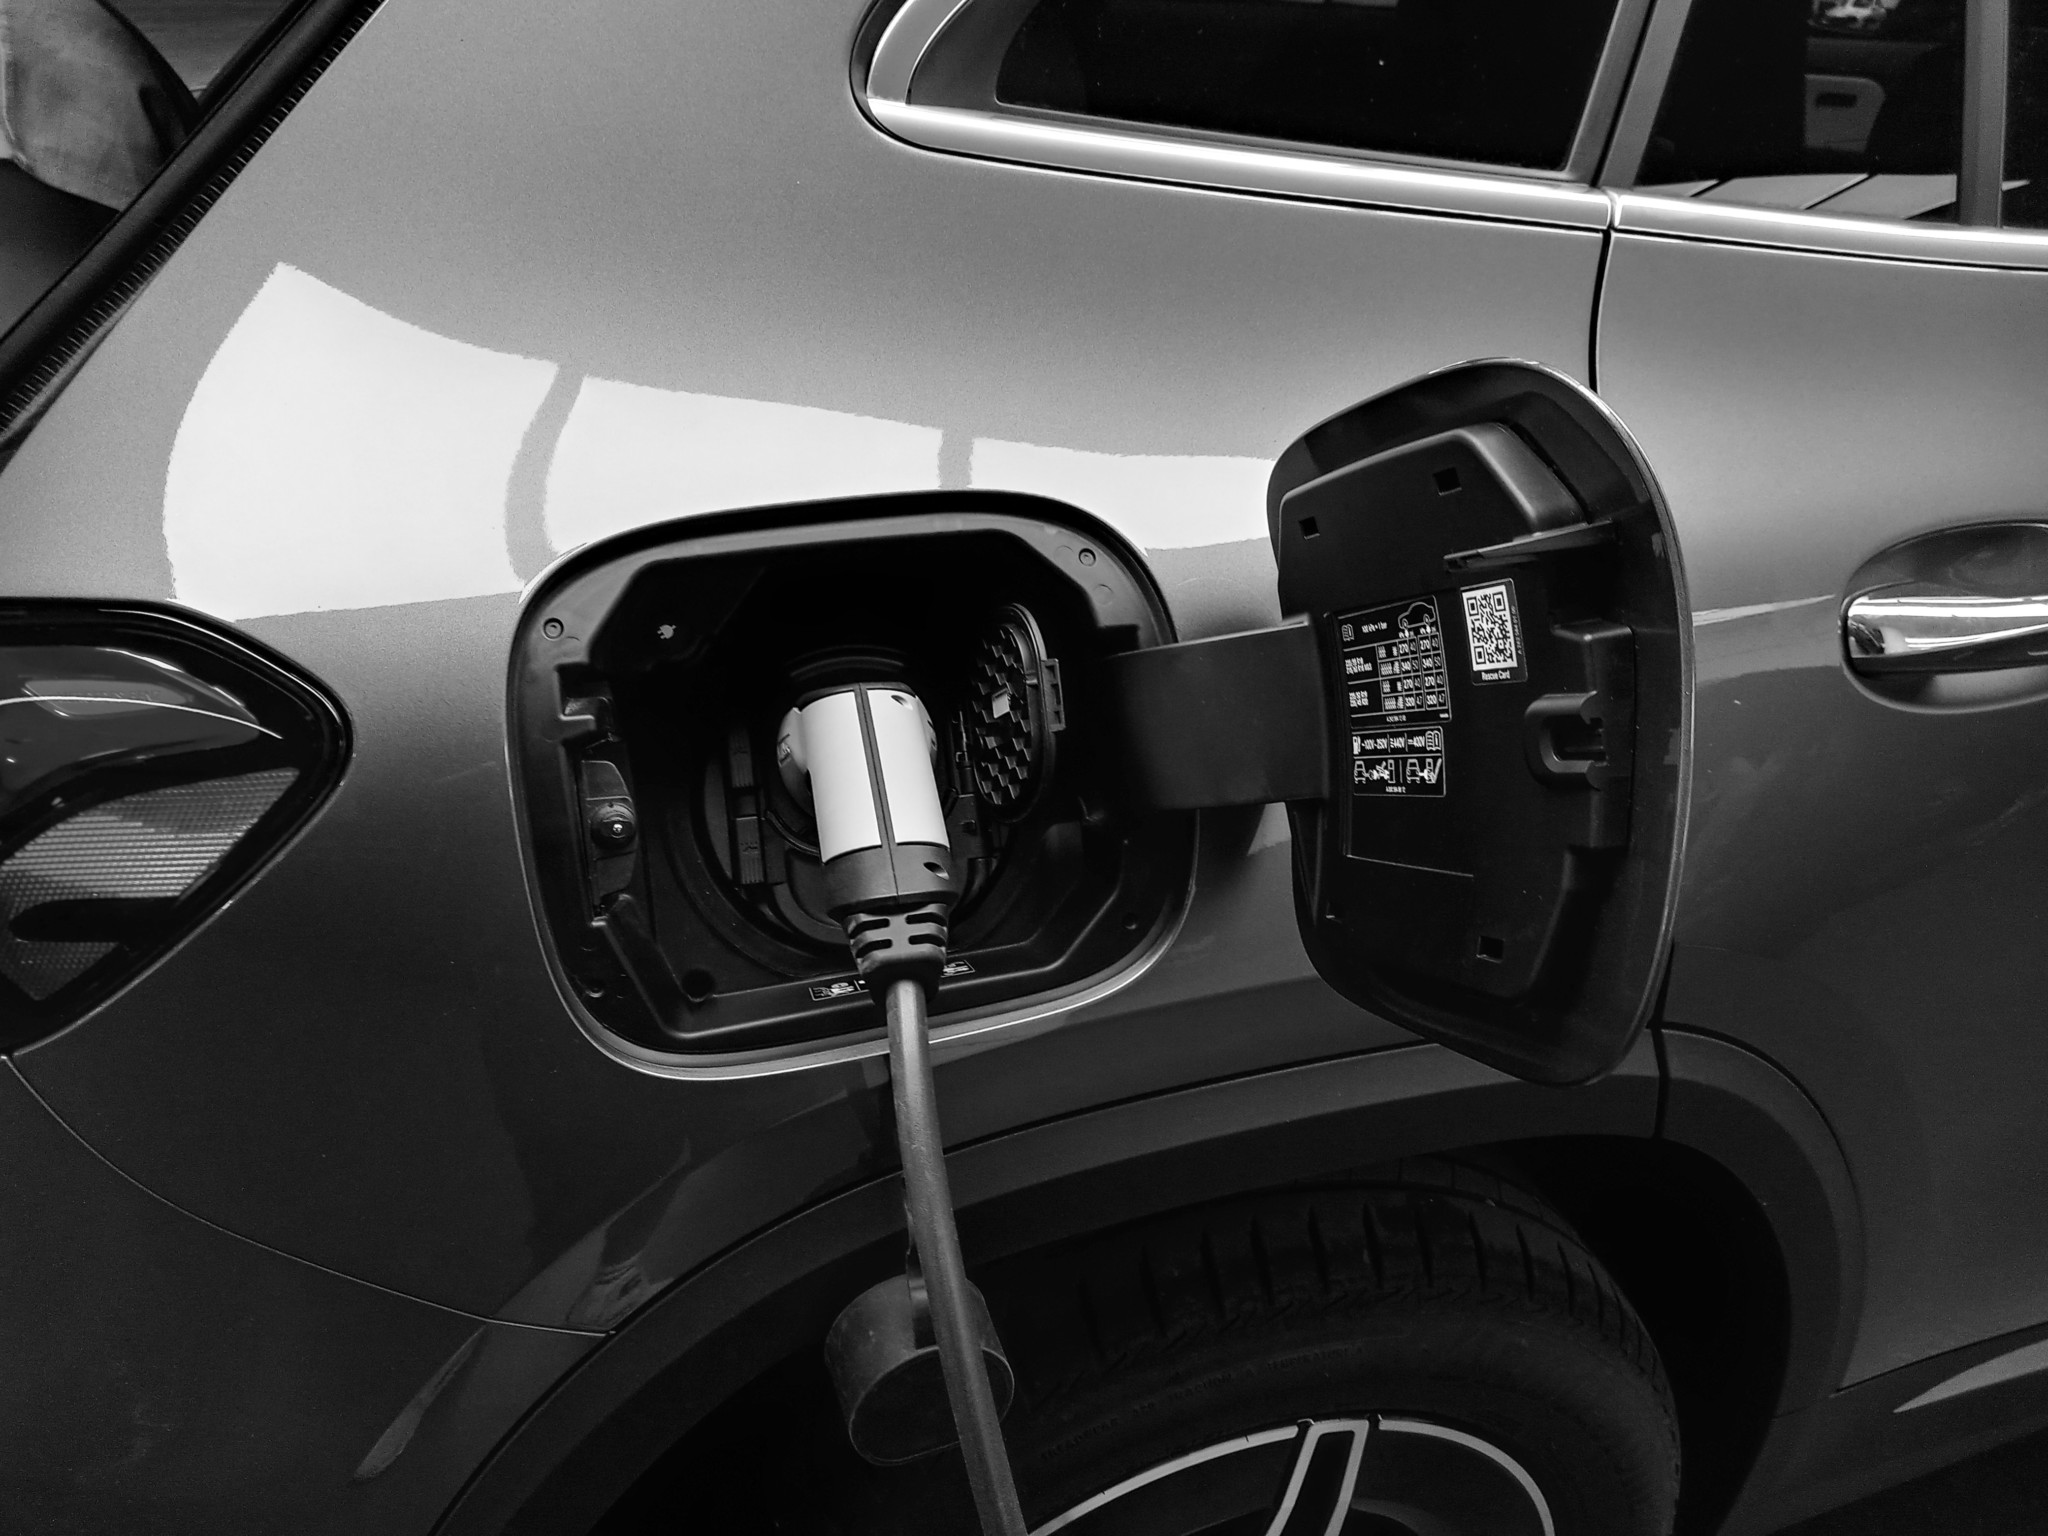 Les automobilistes convertis à l’électrique recourent aux points de recharge publics